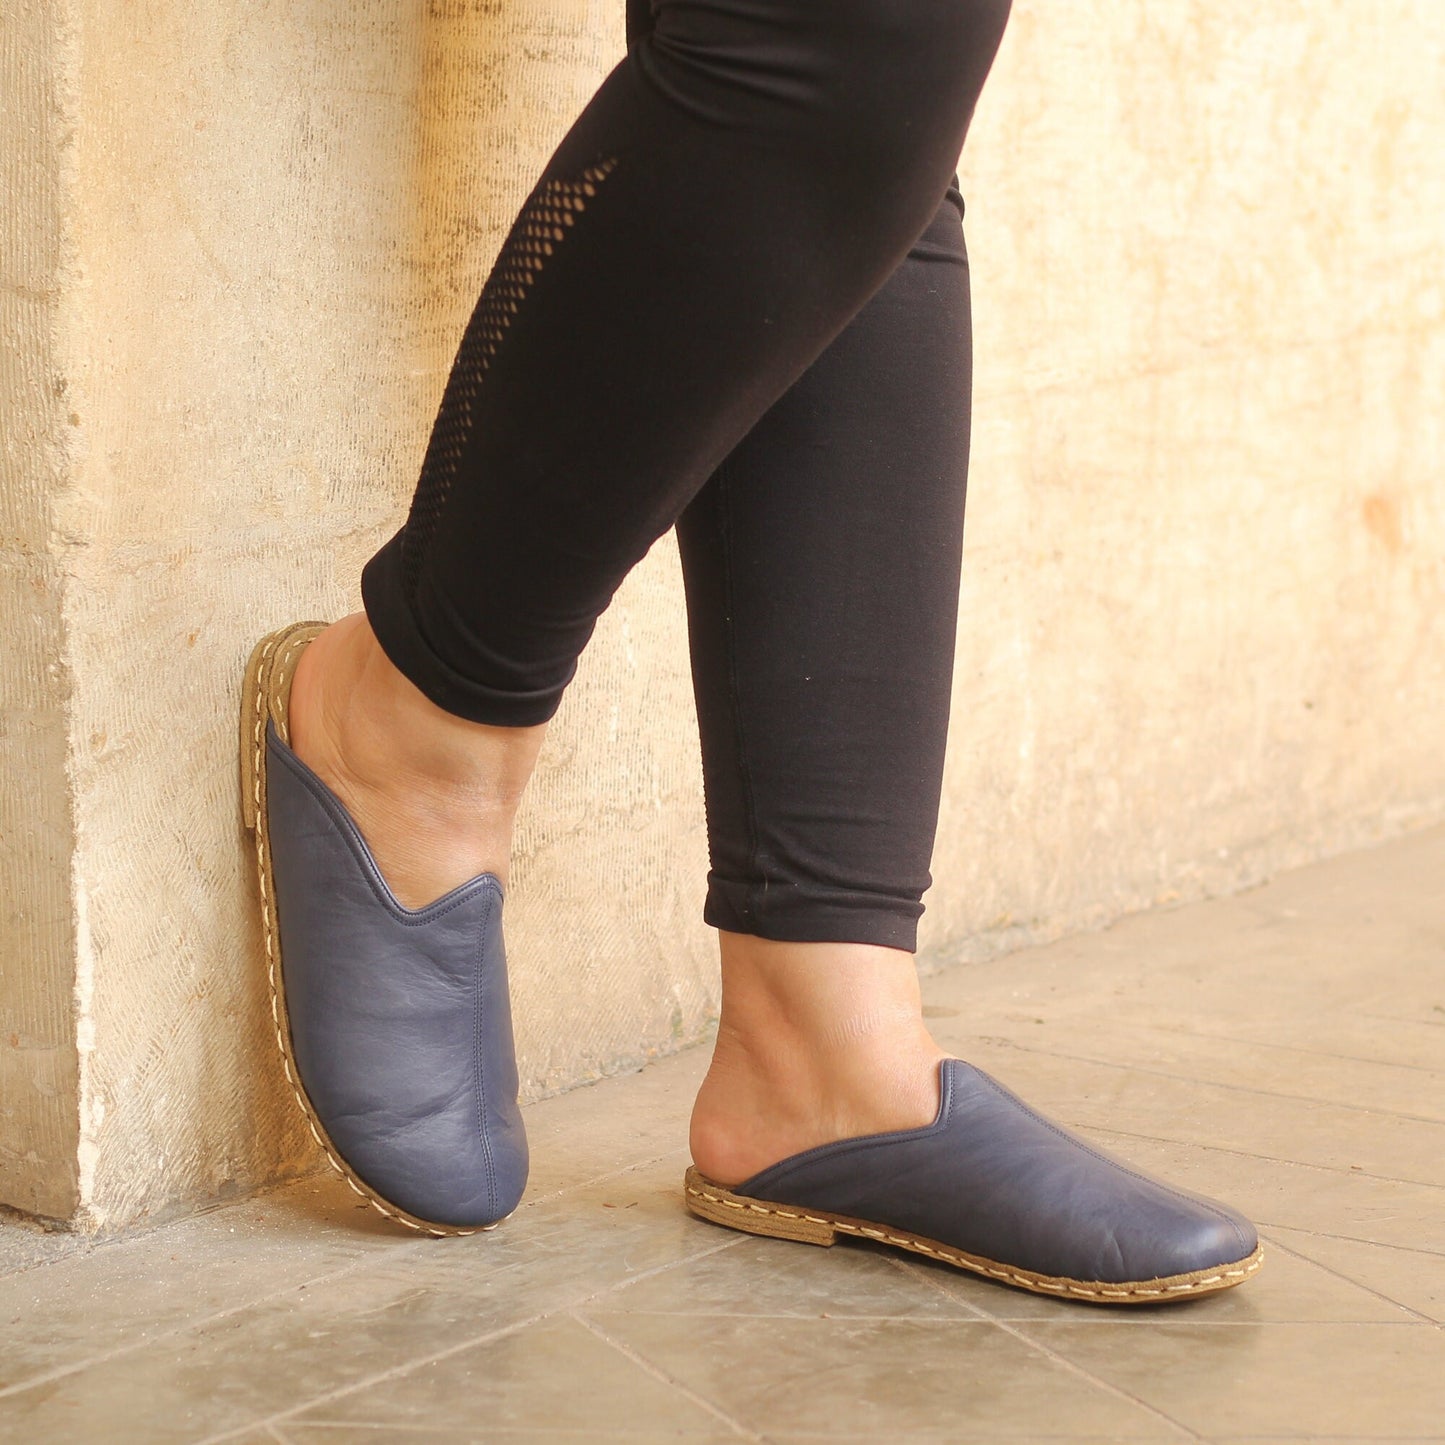 Sheepskin slippers - Winter Slippers - Barefoot Slipper - Close Toed Slippers - Navy Blue Leather - Copper Rivet - For Women